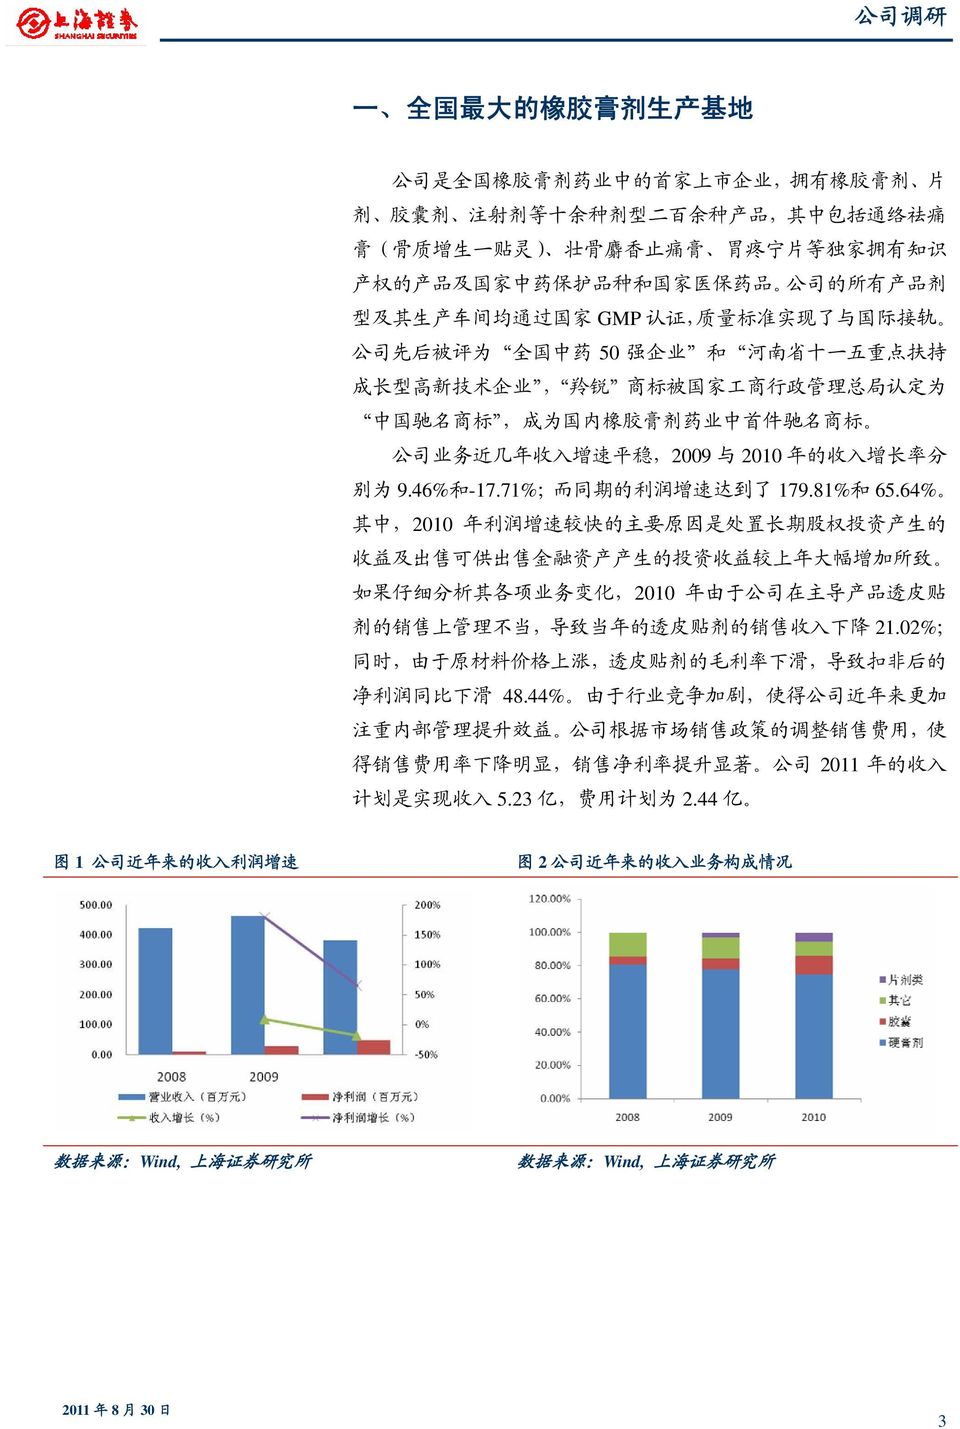 政 管 理 总 局 认 定 为 中 国 驰 名 商 标, 成 为 国 内 橡 胶 膏 剂 药 业 中 首 件 驰 名 商 标 公 司 业 务 近 几 年 收 入 增 速 平 稳,2009 与 2010 年 的 收 入 增 长 率 分 别 为 9.46% 和 -17.71%; 而 同 期 的 利 润 增 速 达 到 了 179.81% 和 65.